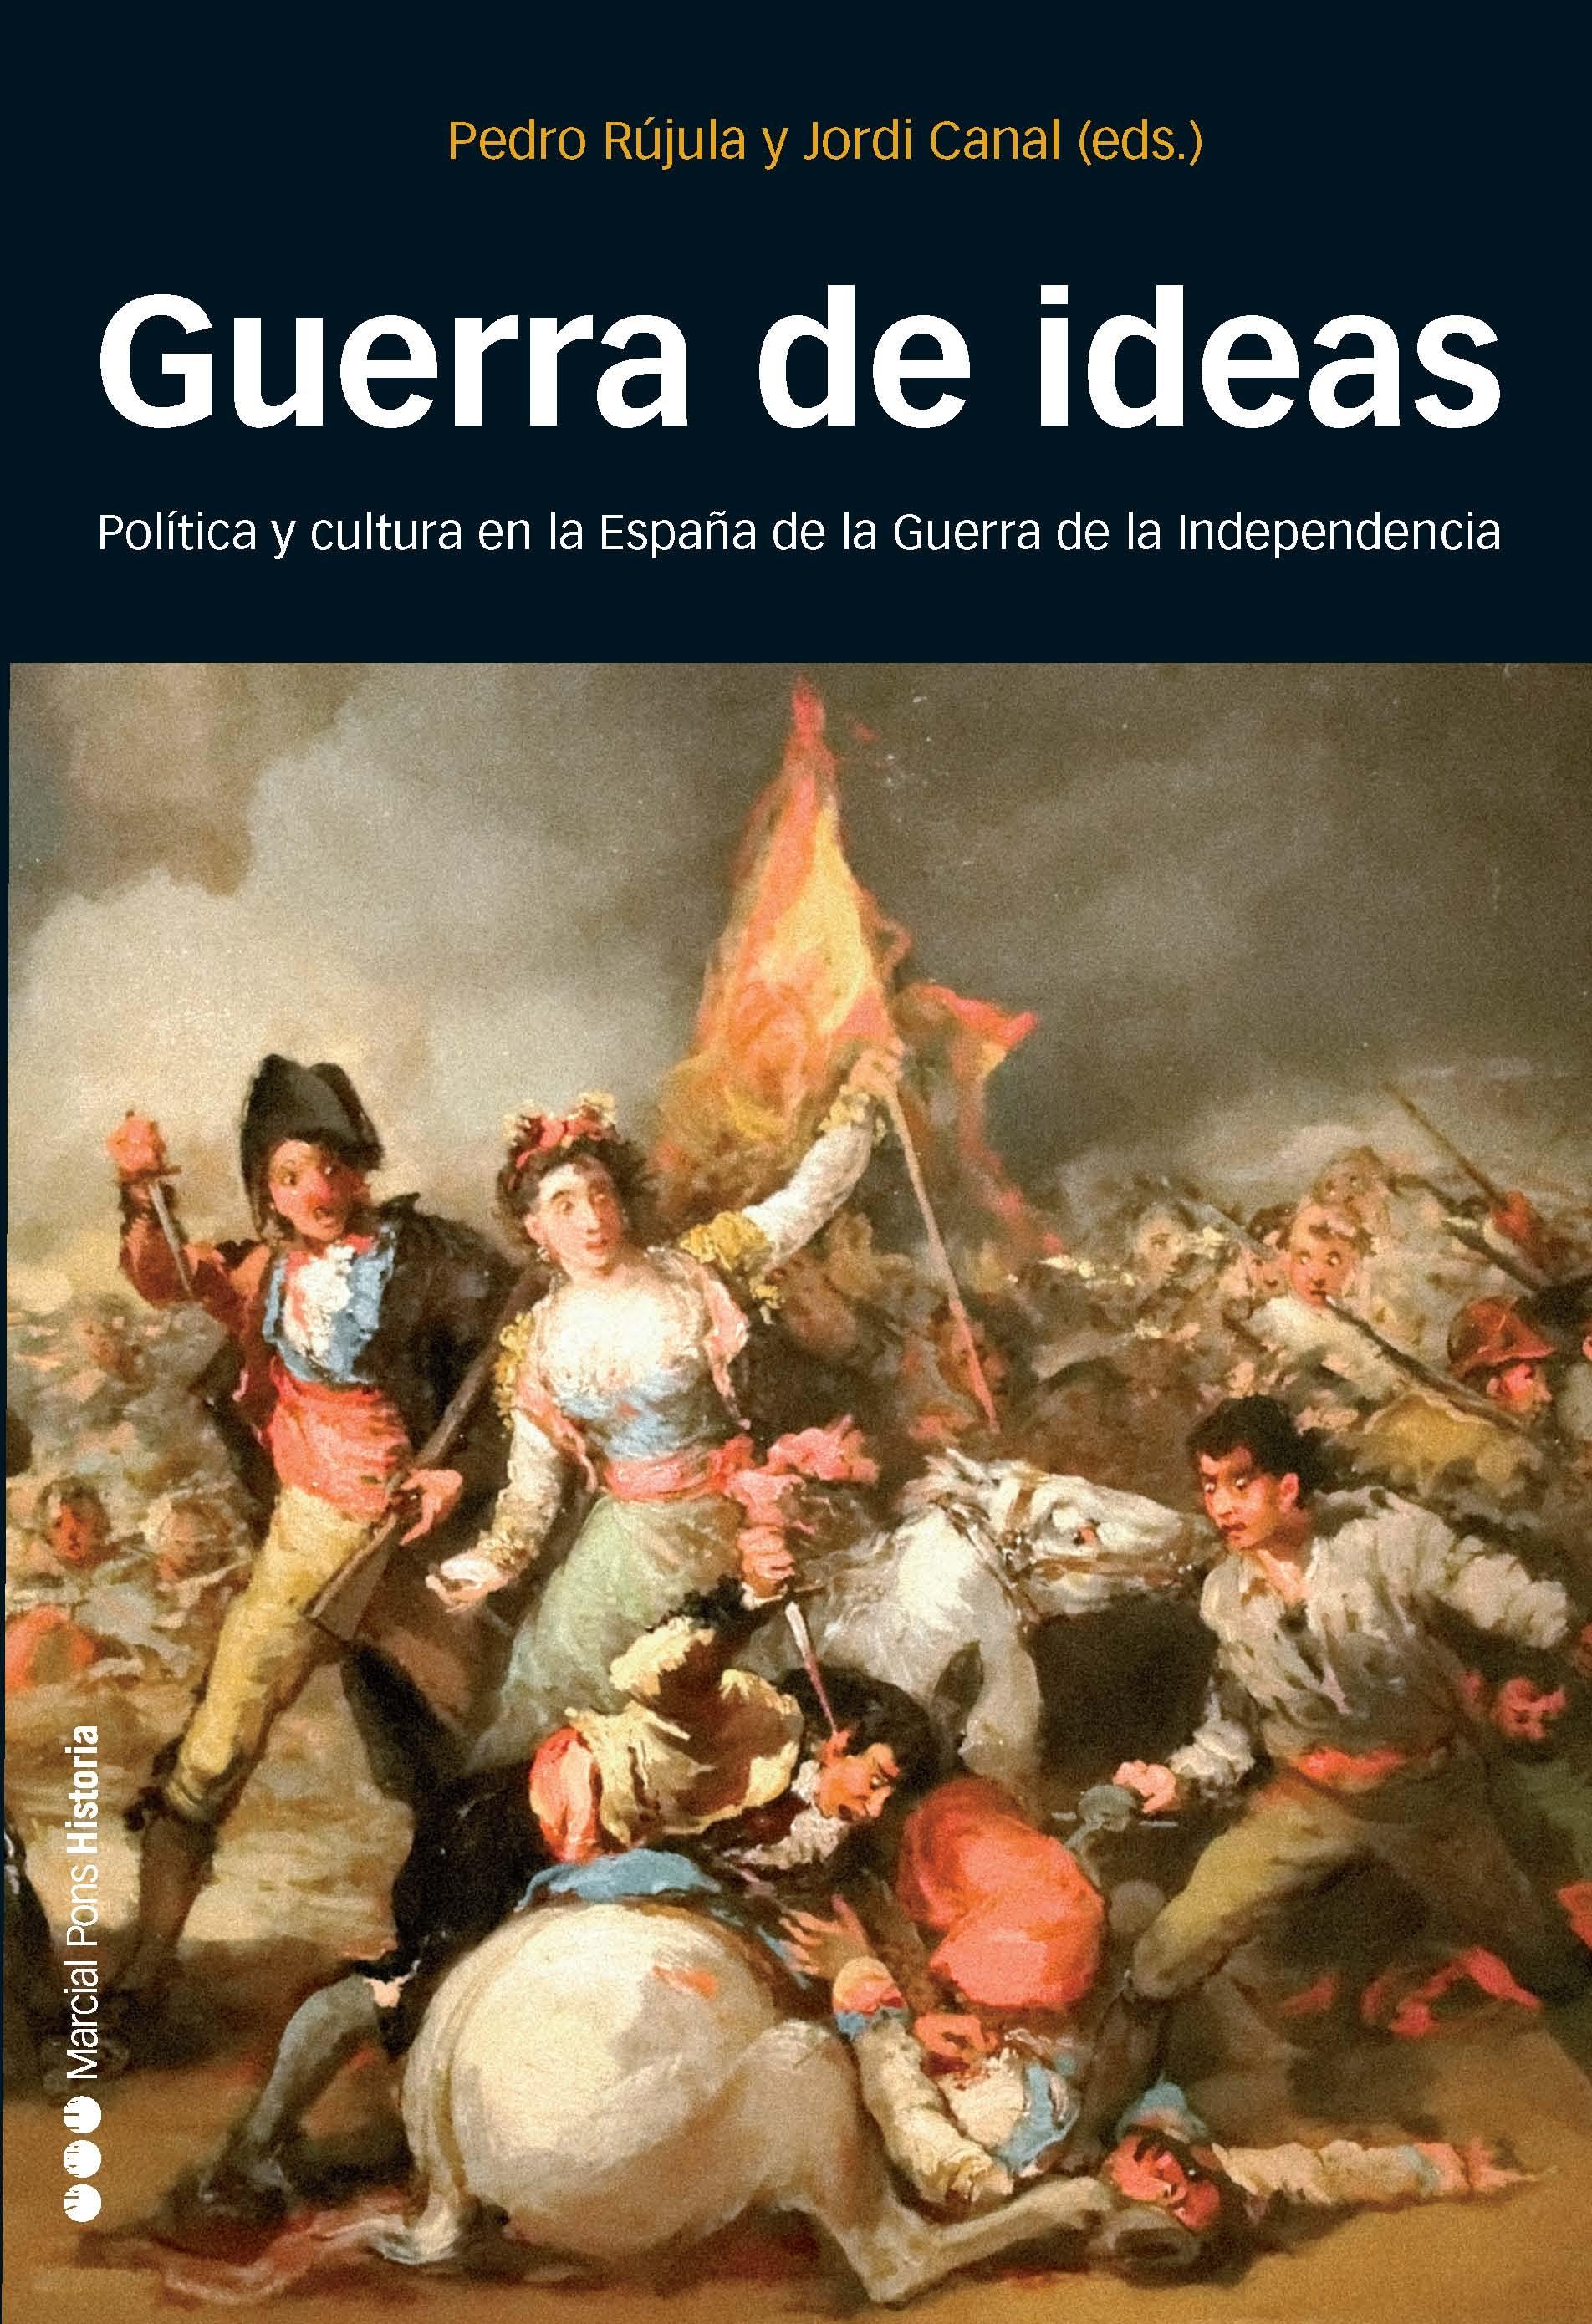 Guerra de ideas "Política y cultura en la España de la Guerra de la Independencia". 